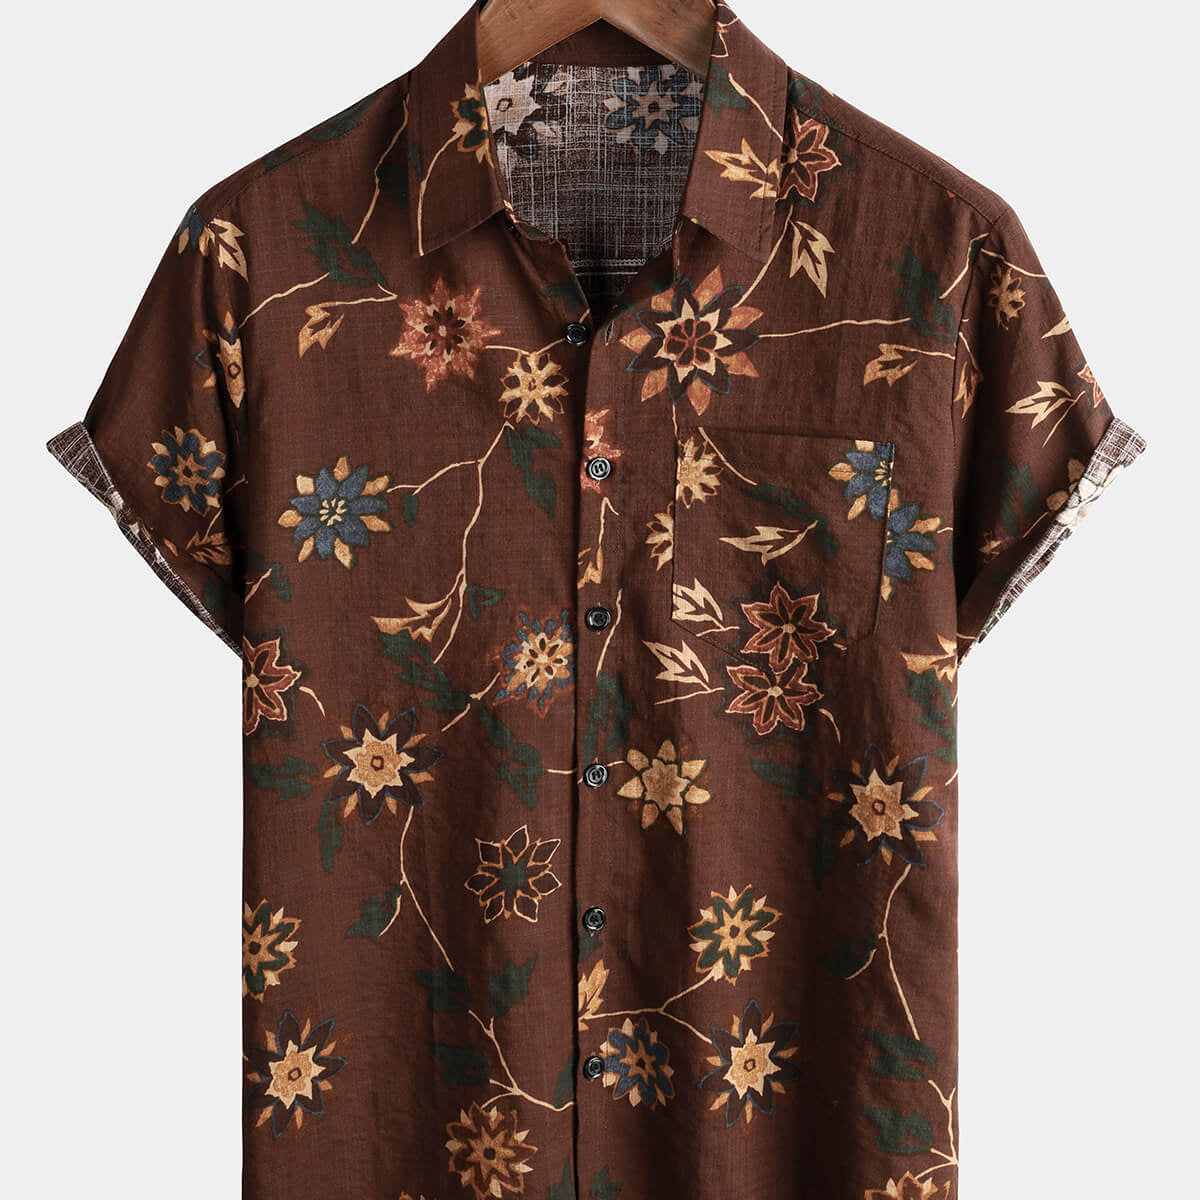 Camisa retro de algodón con bolsillo para la playa para hombre, color marrón, hawaiano, floral, Aloha